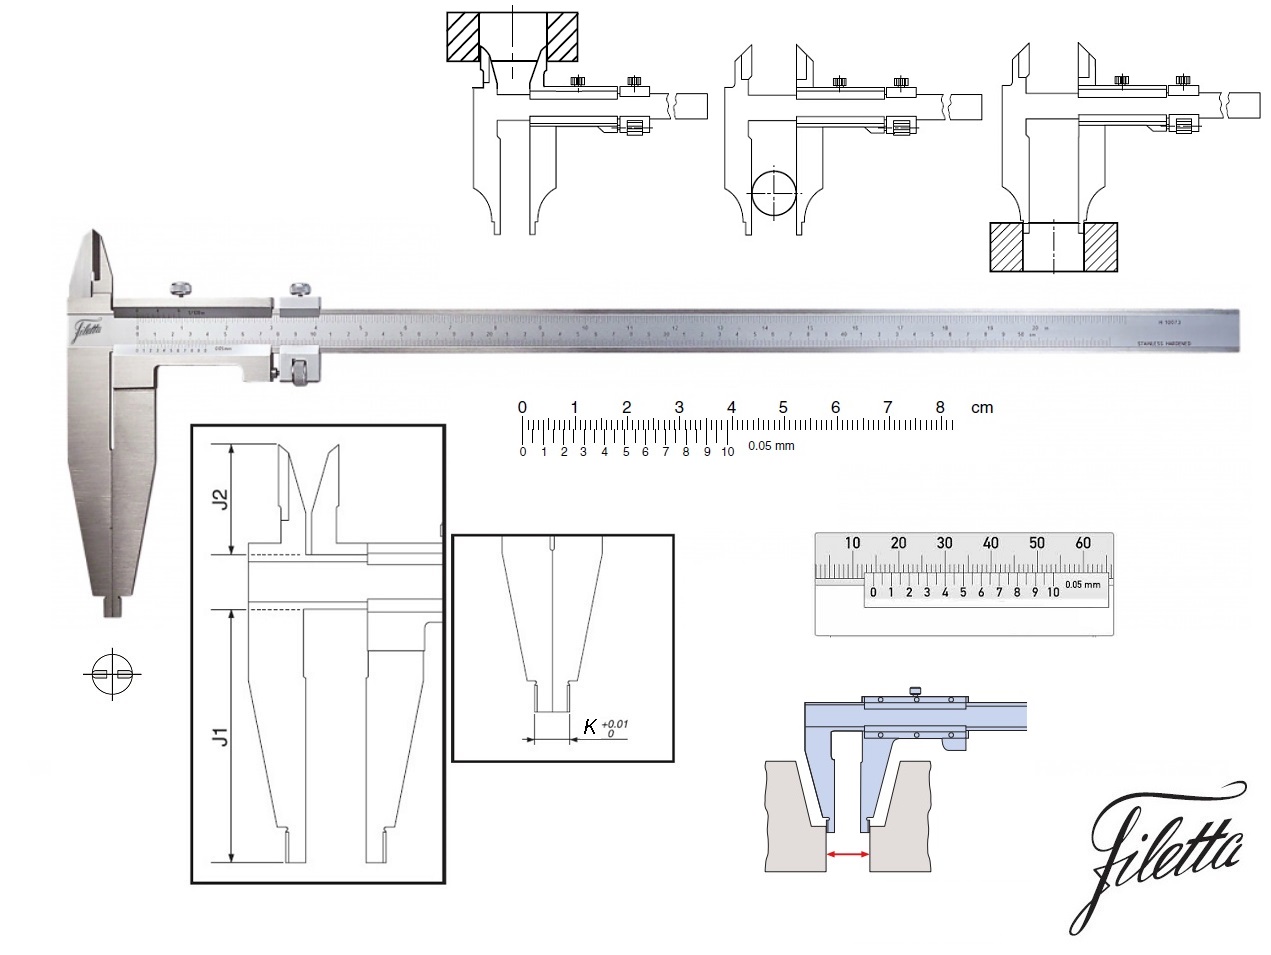 Posuvné měřítko Filetta 0-400 mm, čelisti 100 mm, s měřicími nožíky pro vnitřní měření